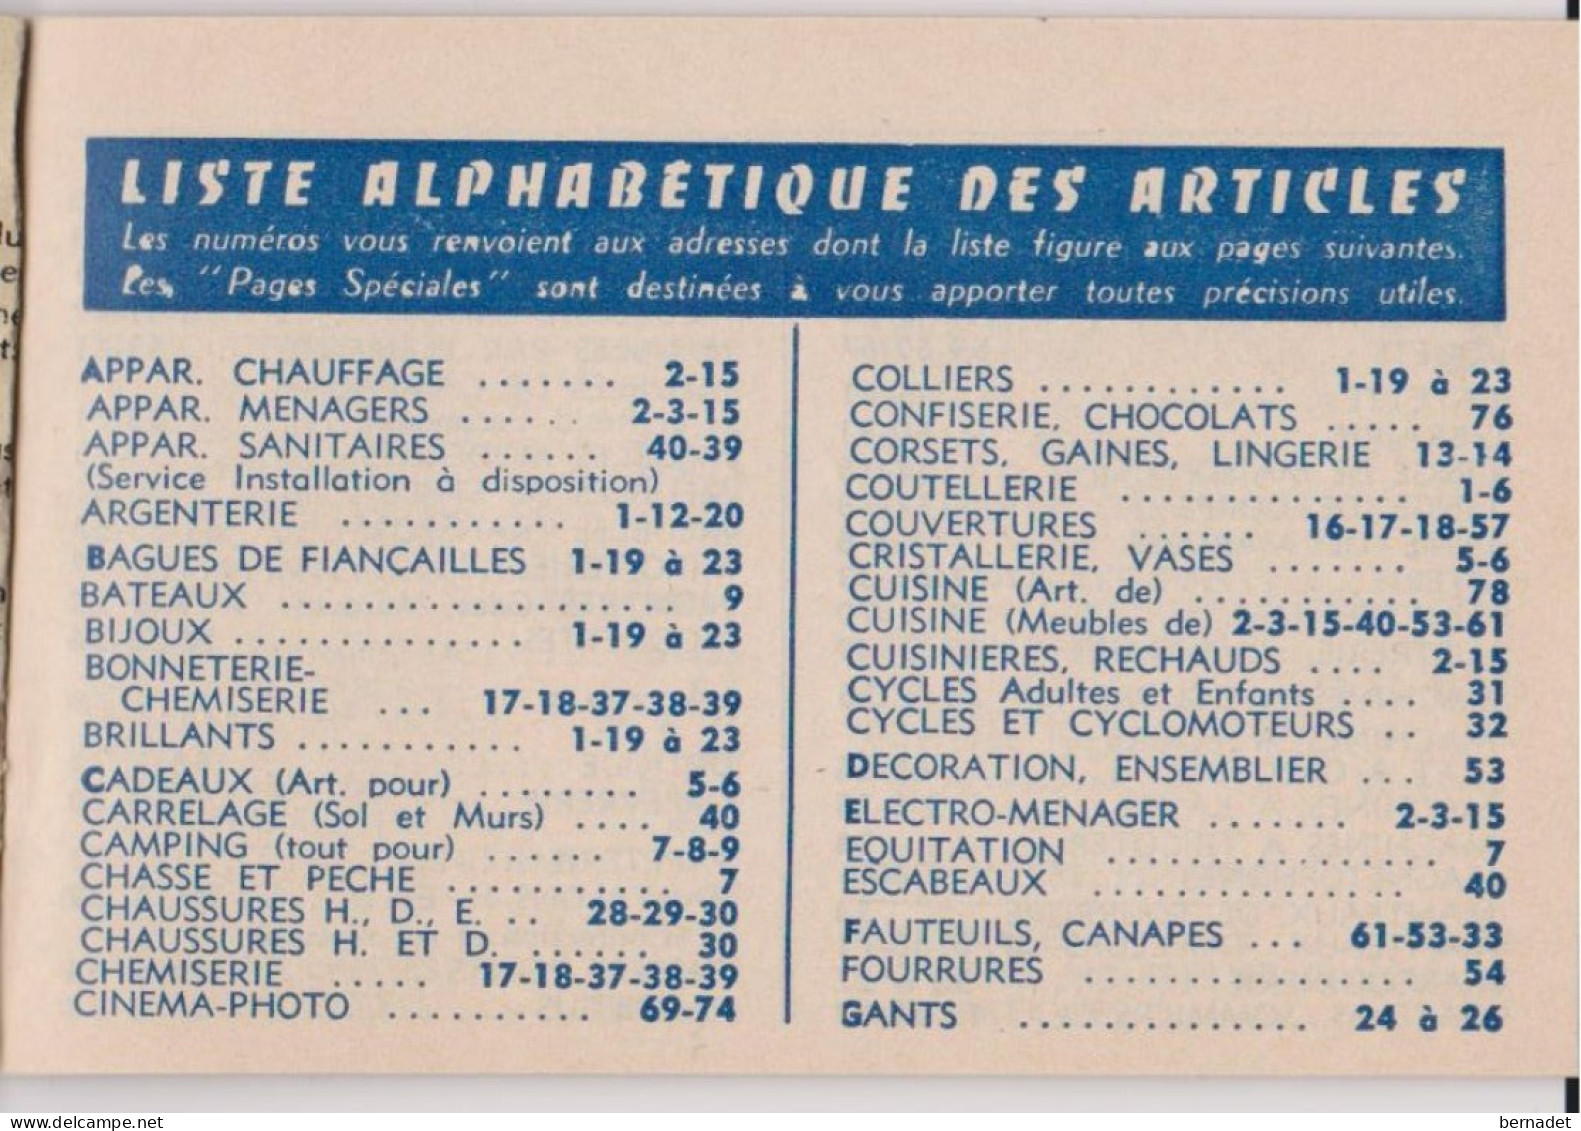 CARNET SPECIAL DE REMISES . 1962  FEDERATION DES ETUDIANTS DE PARIS . - Cheques En Traveller's Cheques